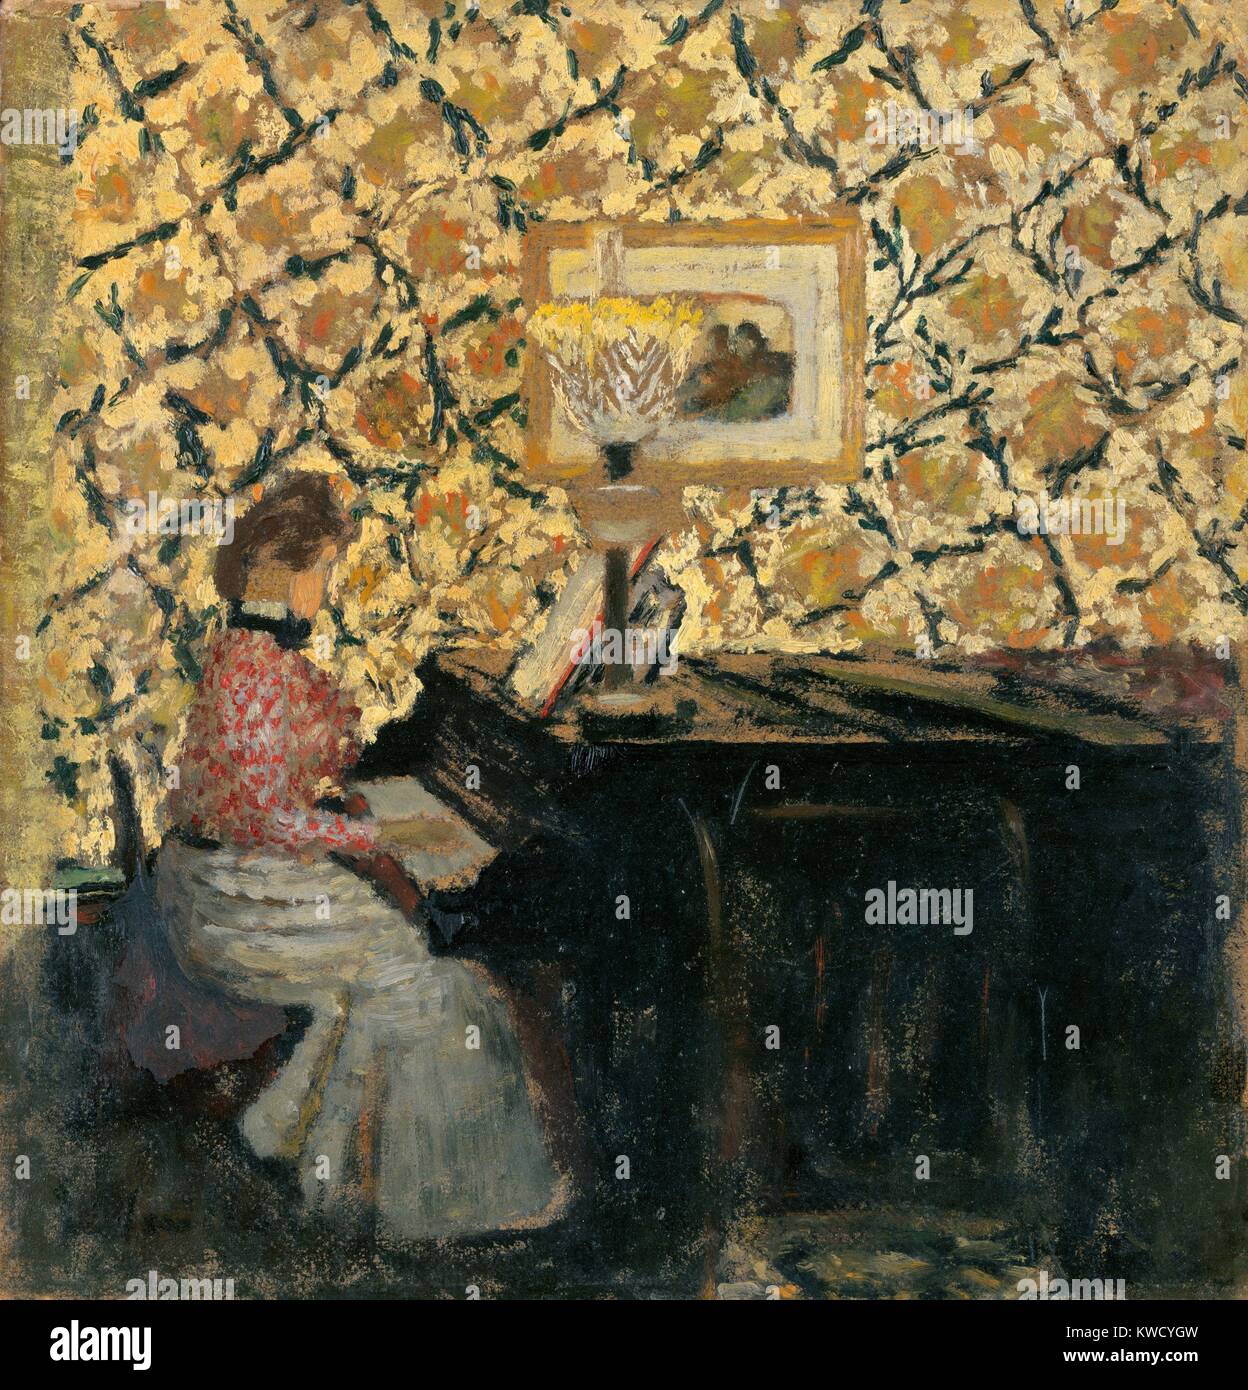 Misia al pianoforte, da Edouard Vuillard, 1895, francese Post-Impressionist, pittura a olio su cartone. Misia Sert, è nato in un polacco famiglia musicale e fu attivo a Parigi negli ambienti artistici dopo sposò Natanson Thadee nel 1889 (BSLOC 2017 5 99) Foto Stock